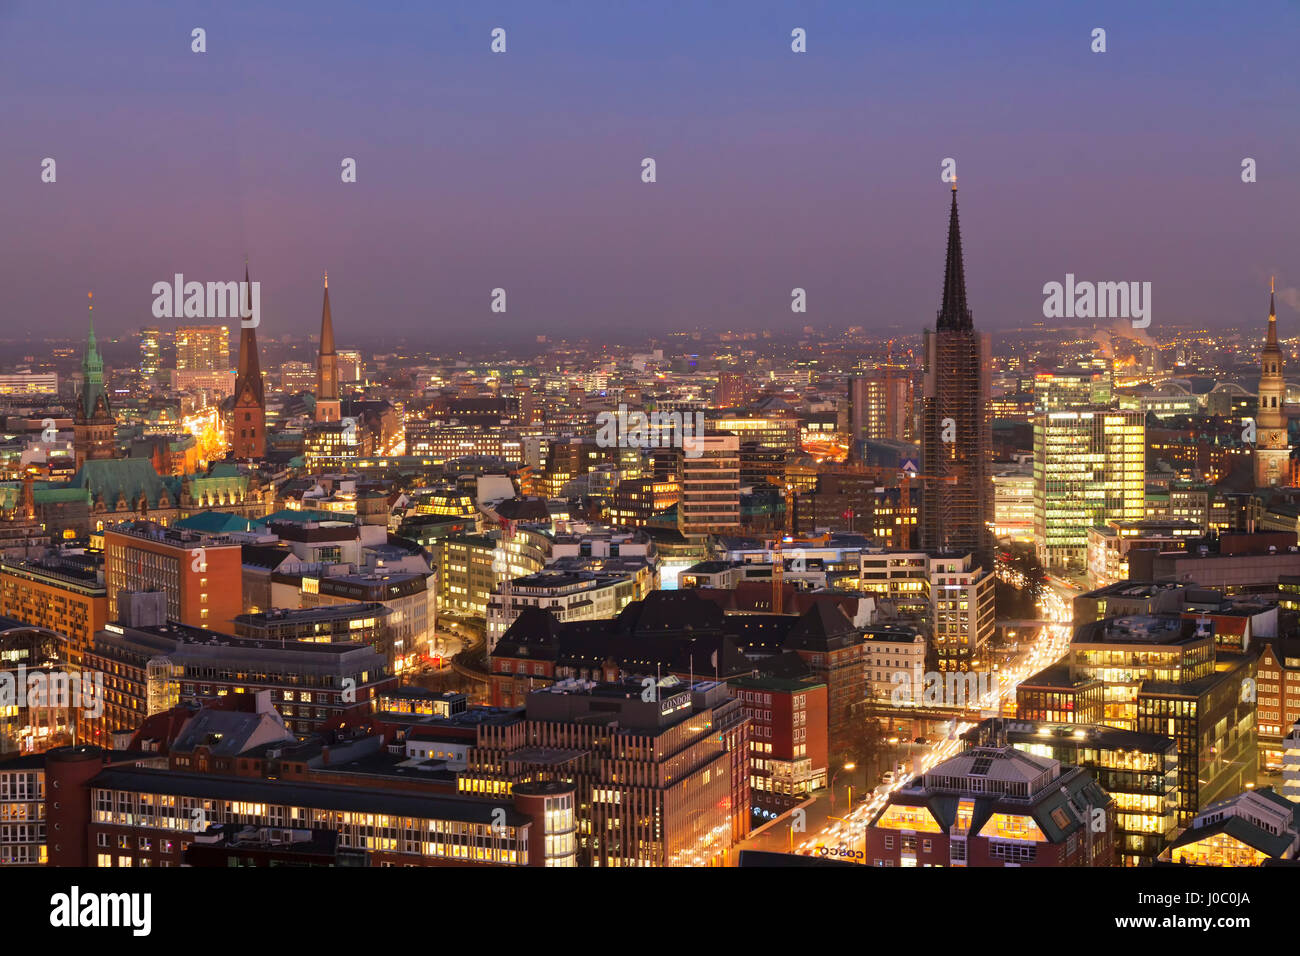 Vista sobre el centro de la ciudad por la noche, la ciudad hanseática de Hamburgo, Alemania Foto de stock